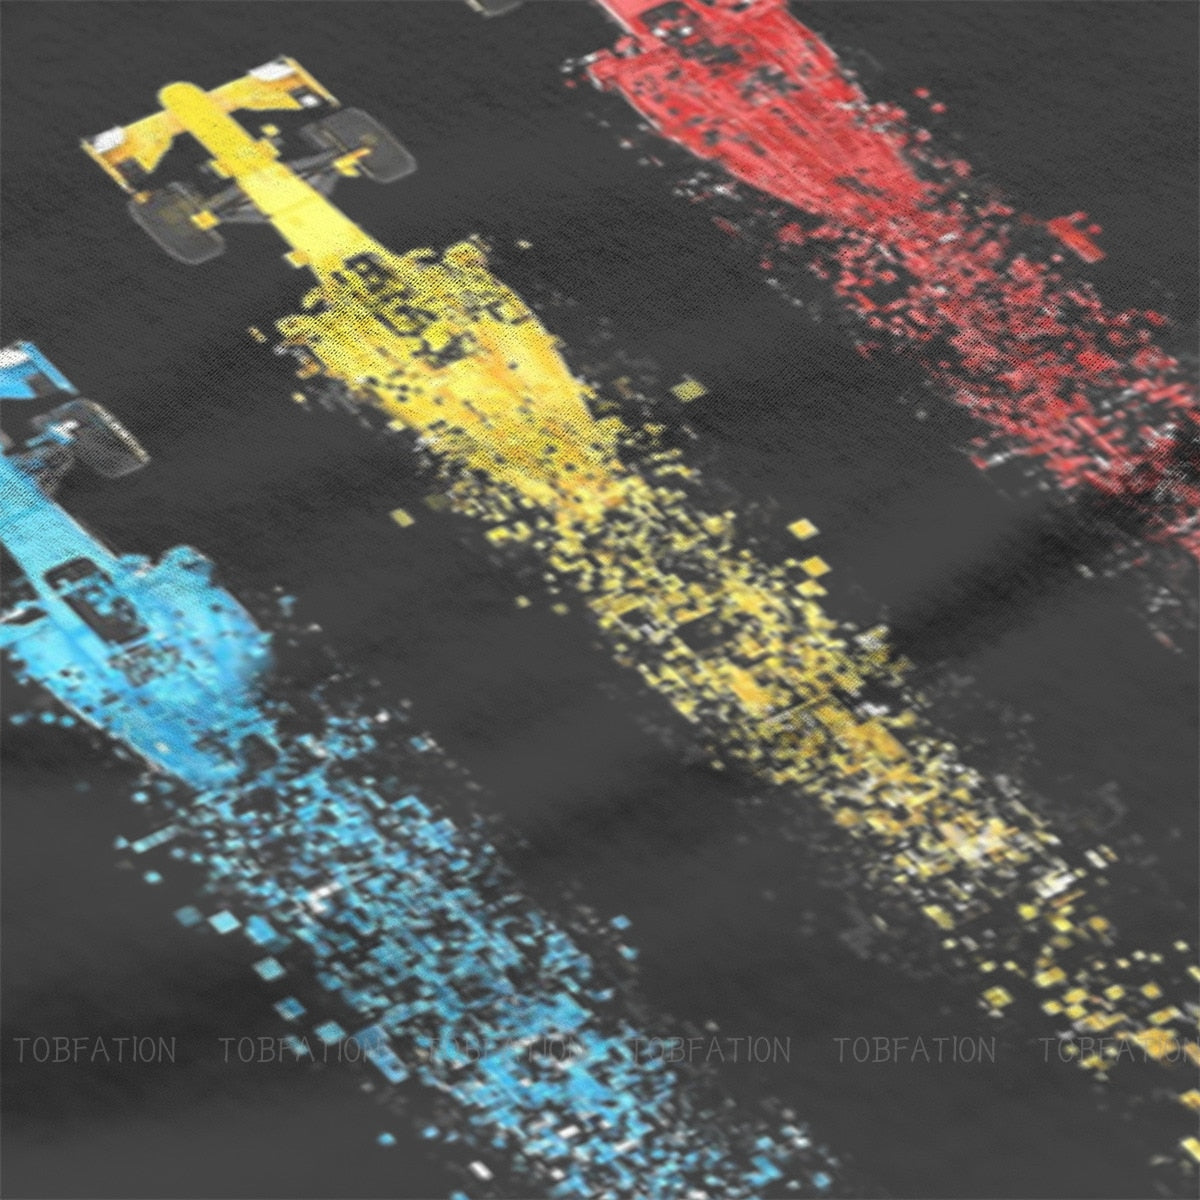 Abstract Formula 1 Cars Racing T-Shirt